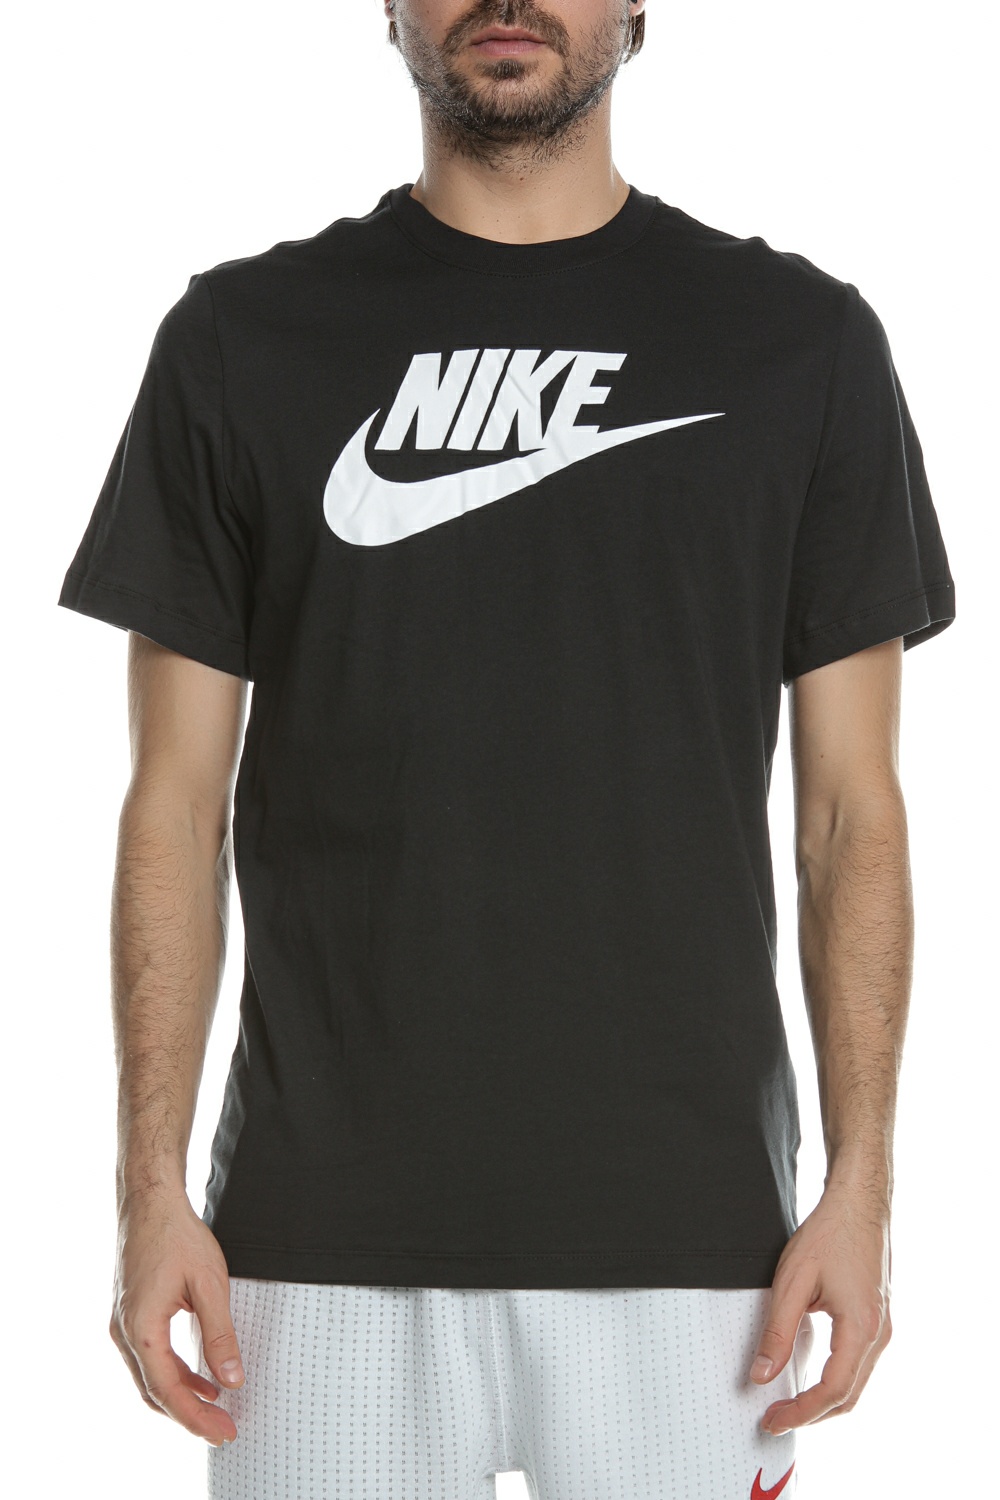 Ανδρικά/Ρούχα/Αθλητικά/T-shirt NIKE - Ανδρικό κοντομάνικο t-shirt NIKE NSW ICON FUTURA μαύρο